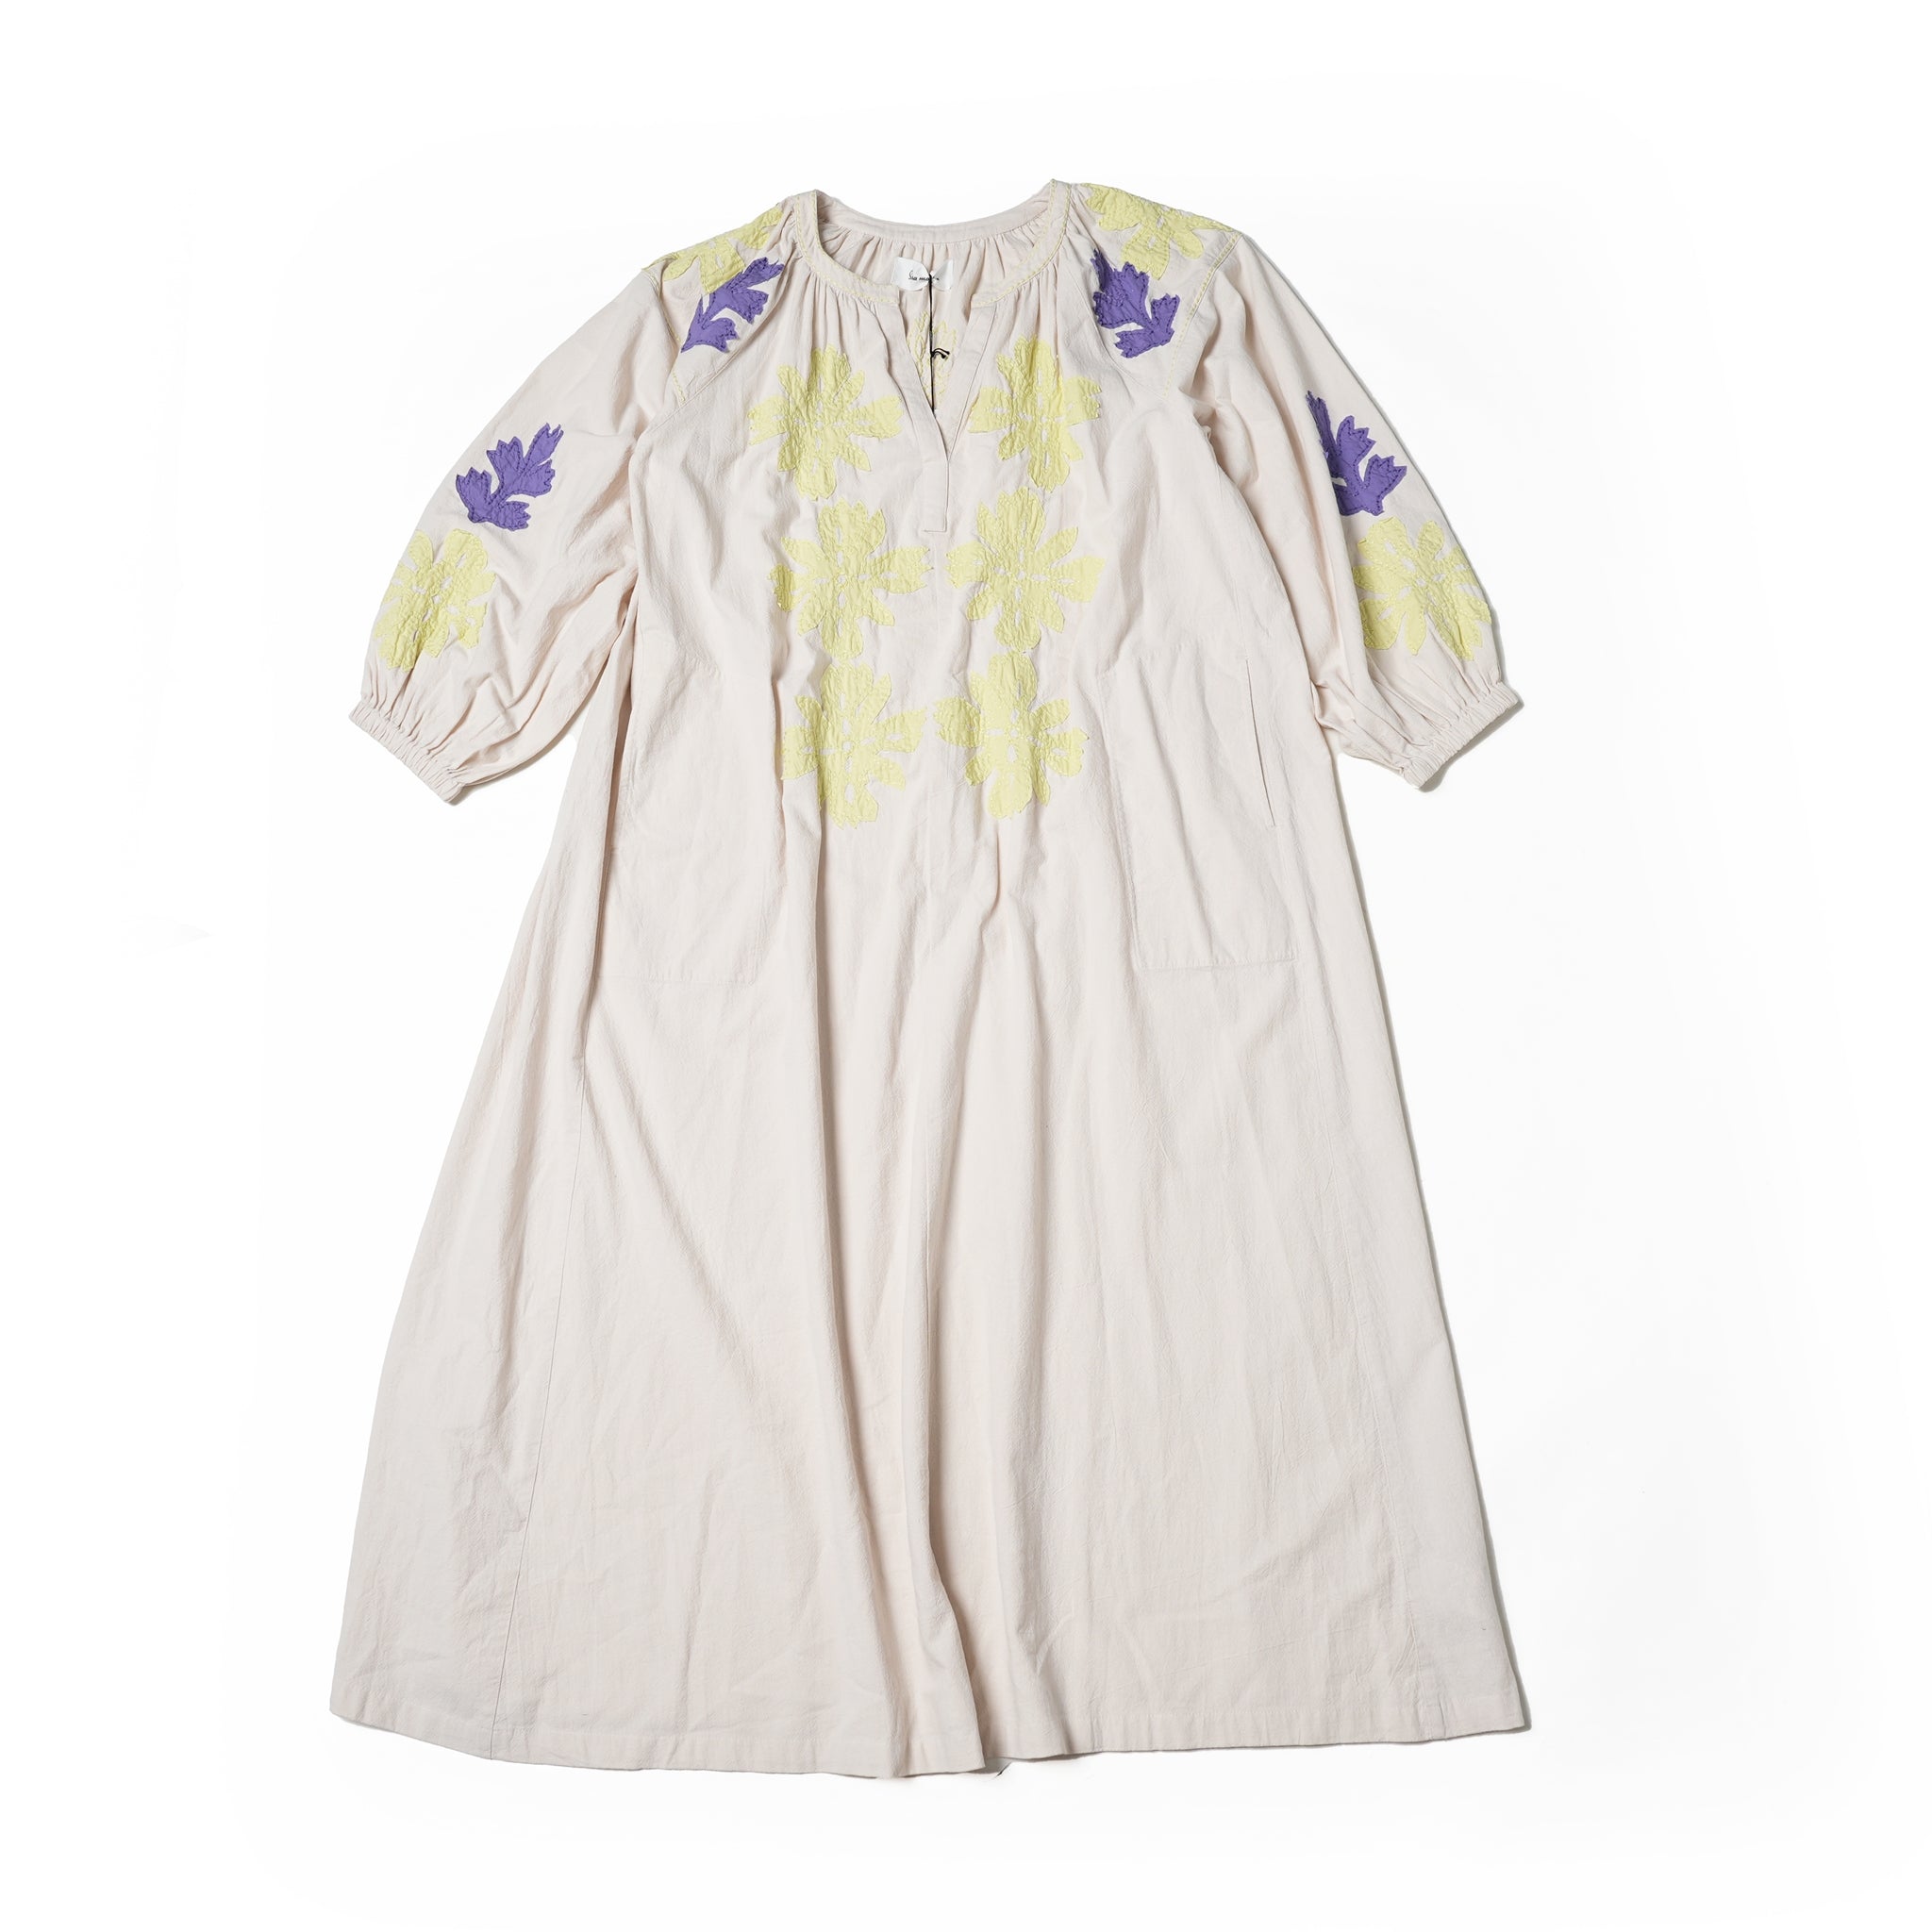 No:020432SA1b | Name:COTTON FLOWER PATCHWORK DRESS | Color:Ecru ...